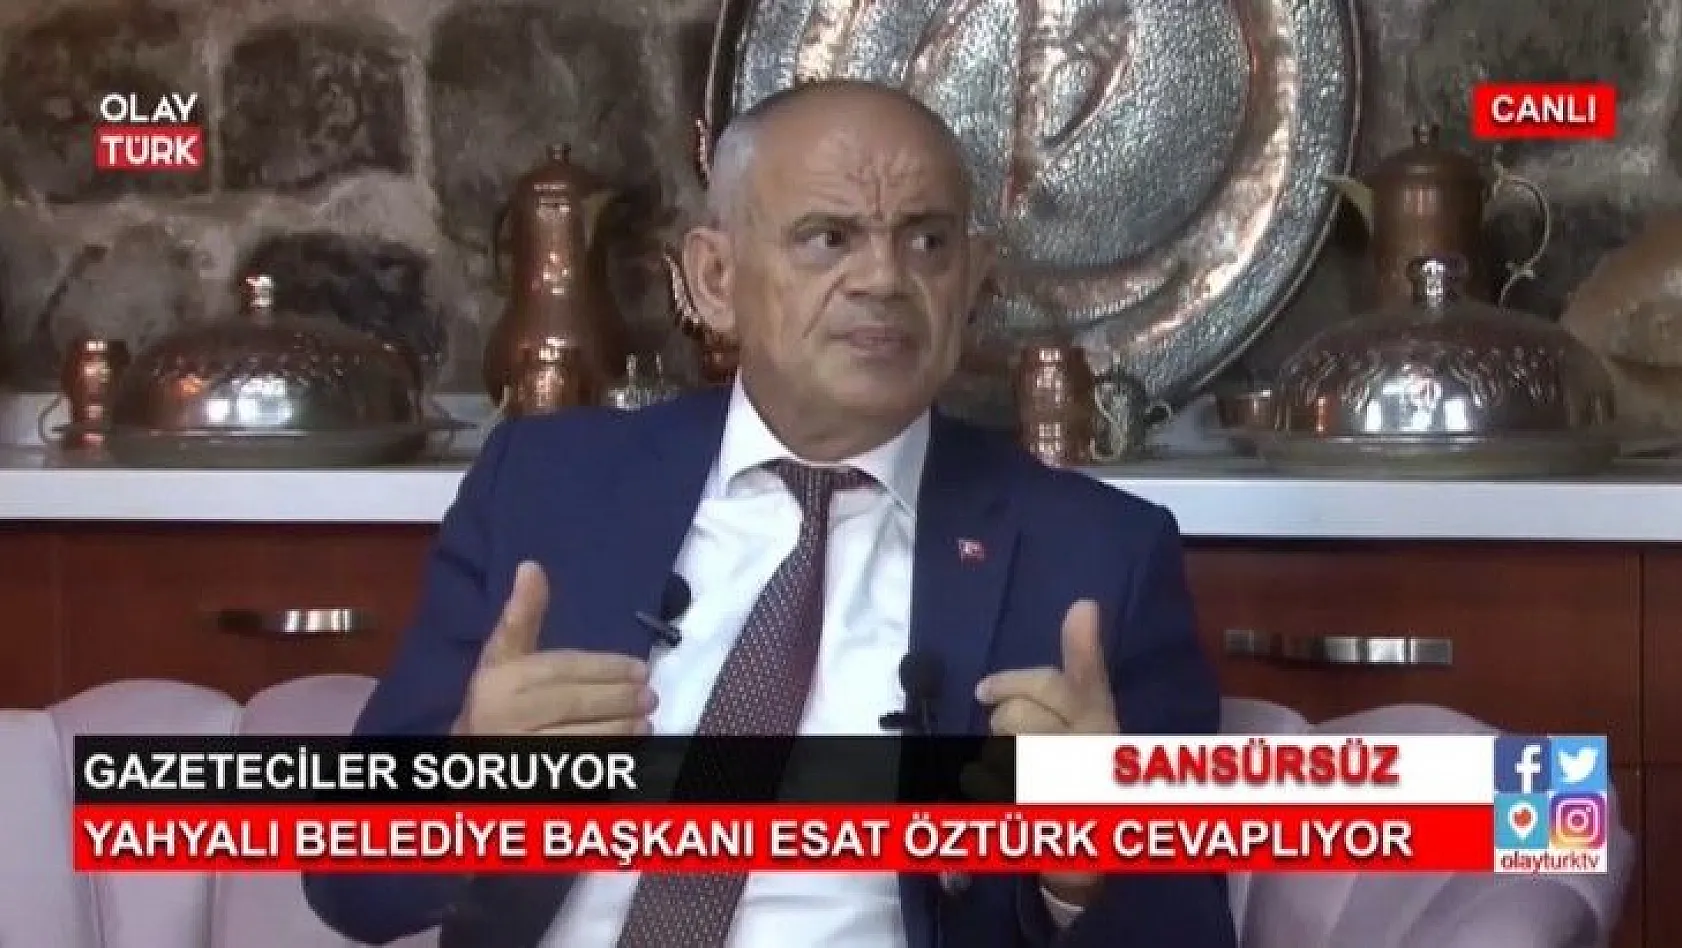 Başkan Öztürk, Özhaseki'ye seslendi: Hakkımızdan kesinlikle vazgeçmem!